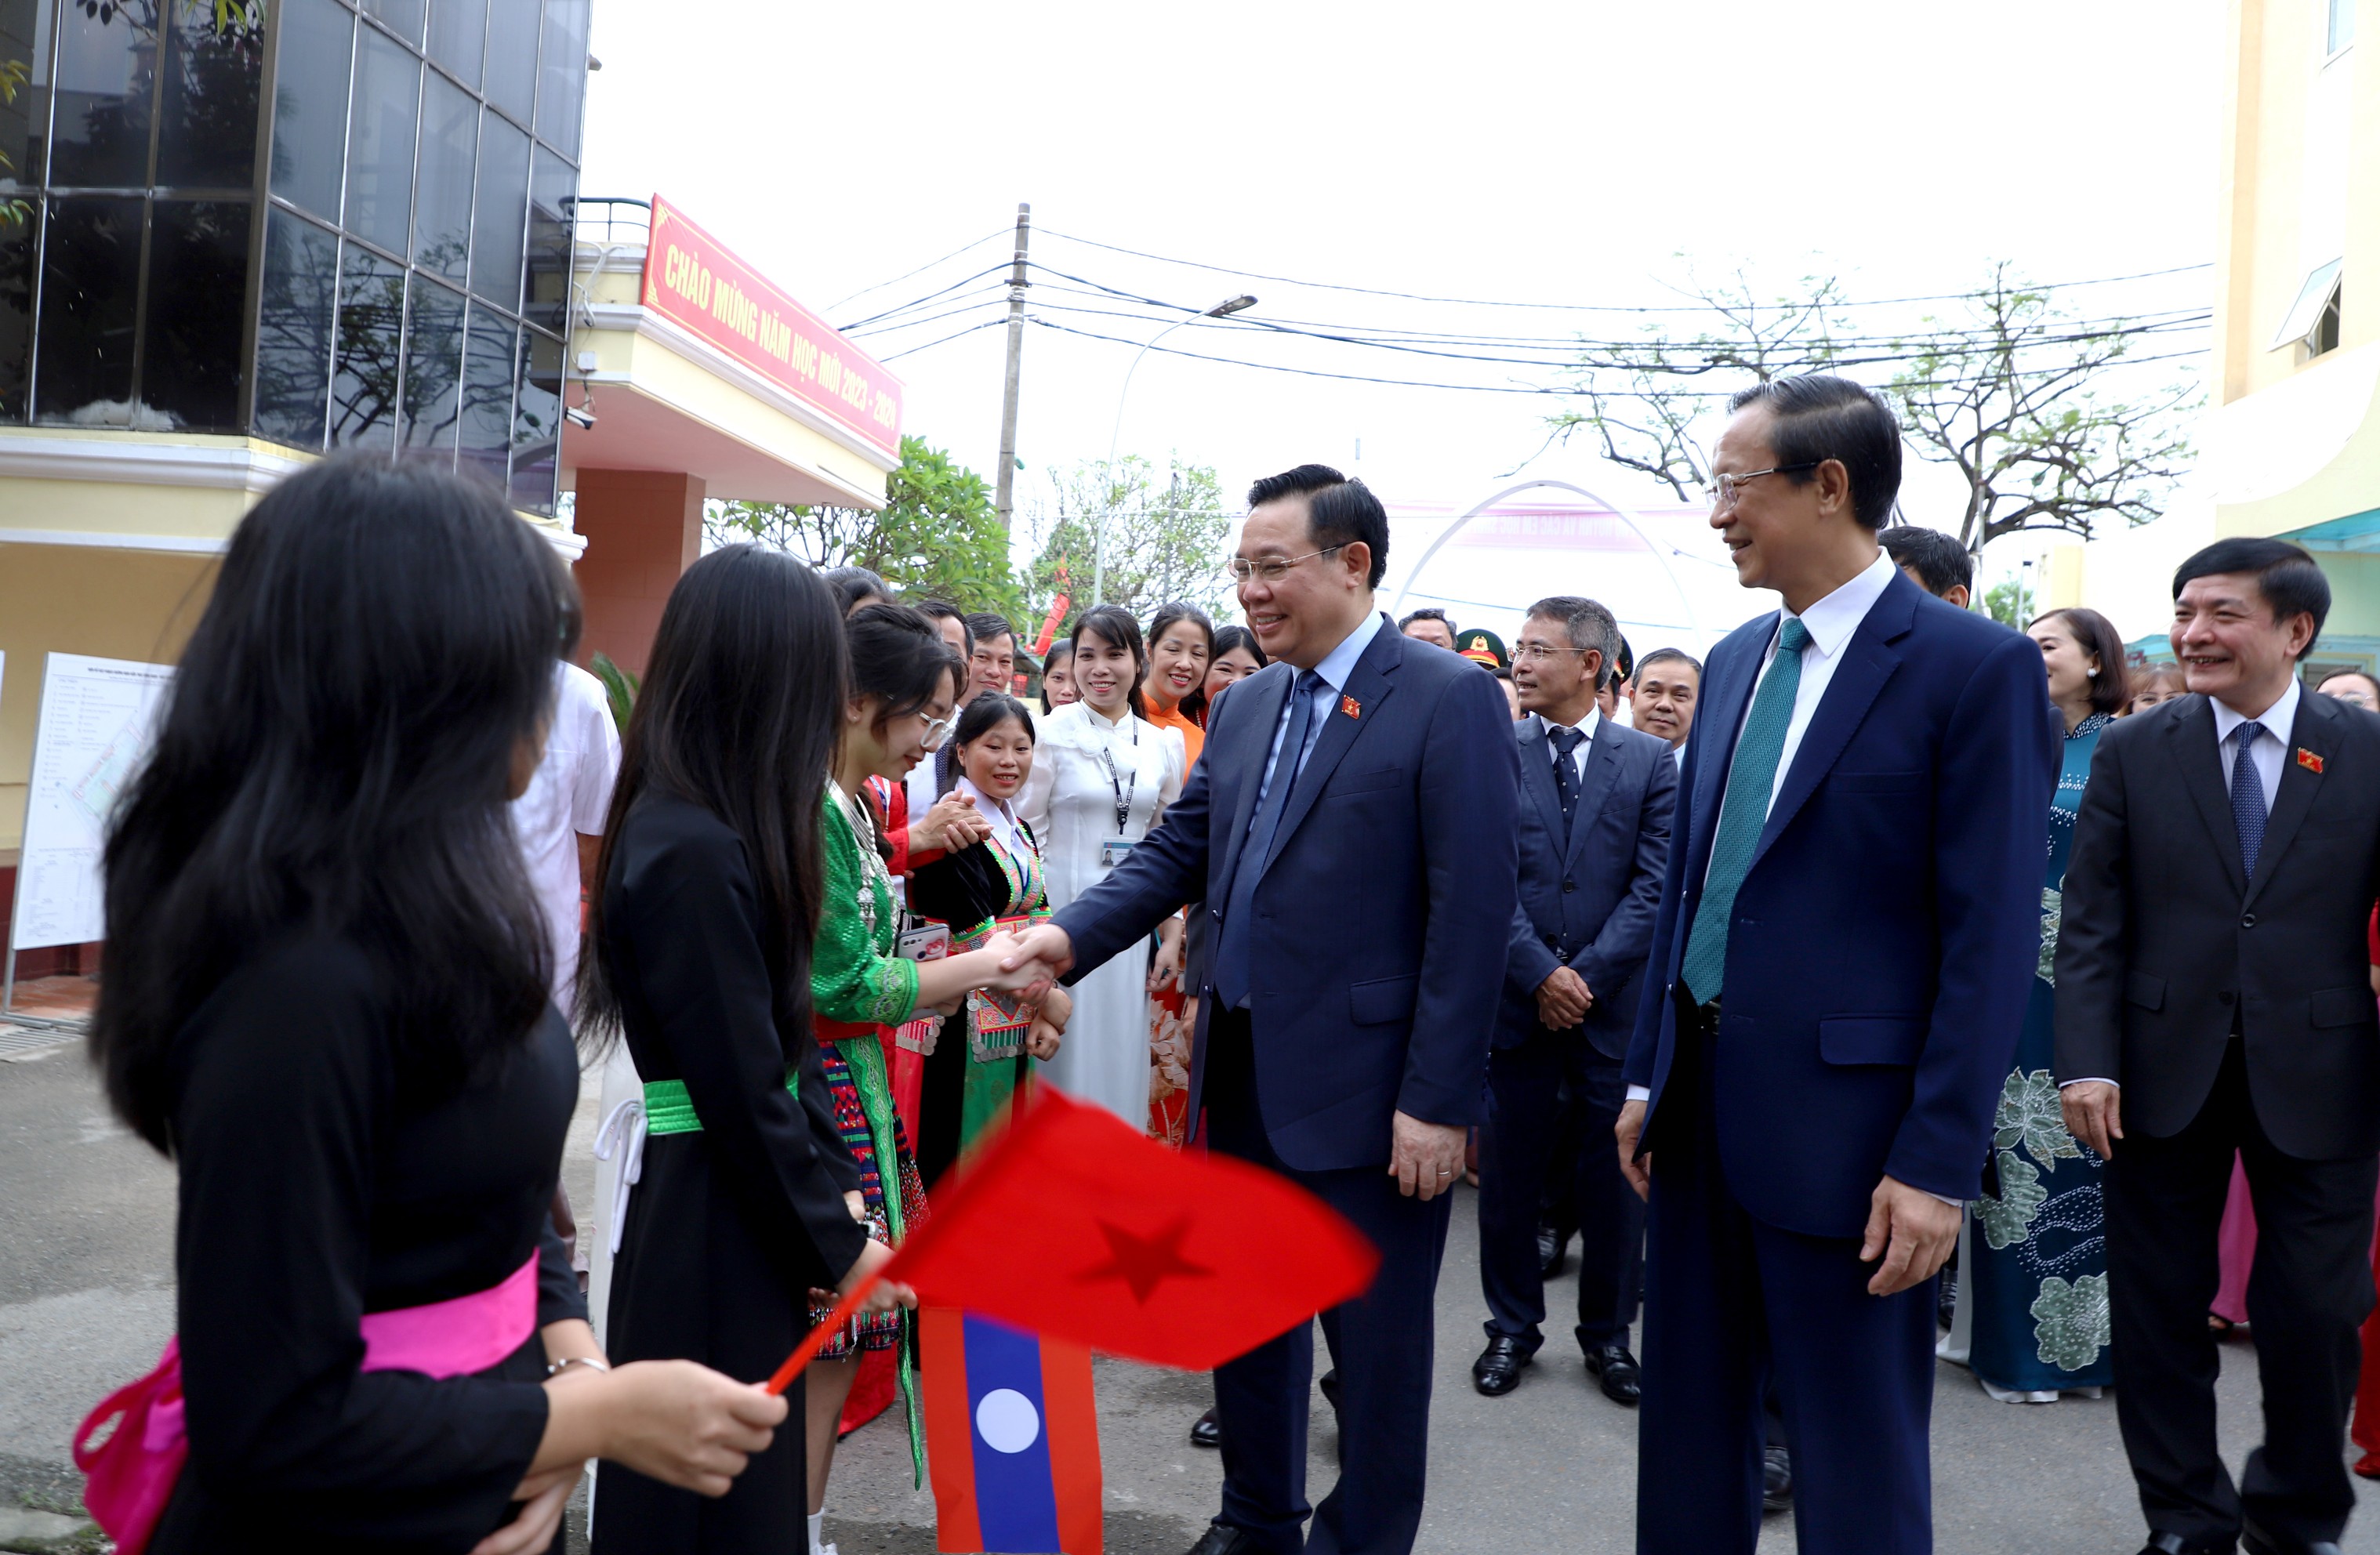 Chủ tịch Quốc hội Vương Đình Huệ: Trường Hữu nghị T78 là cầu nối vun đắp thêm mối quan hệ đặc biệt Việt- Lào